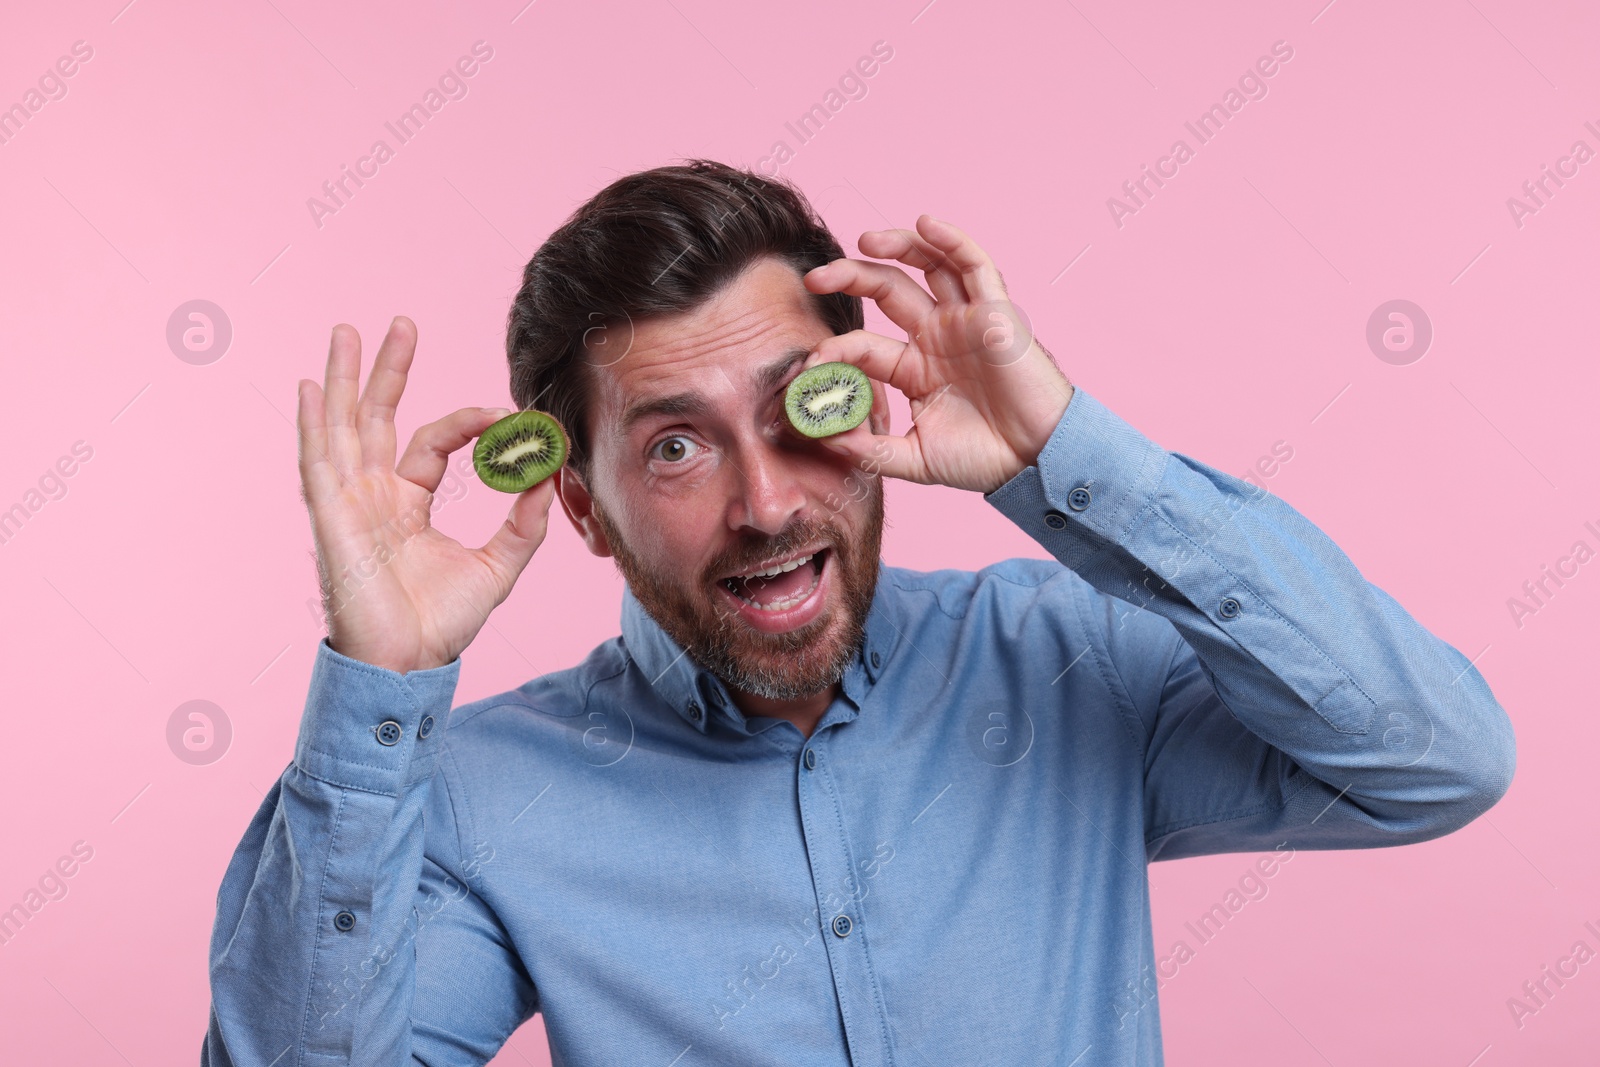 Photo of Emotional man holding halves of kiwi on pink background